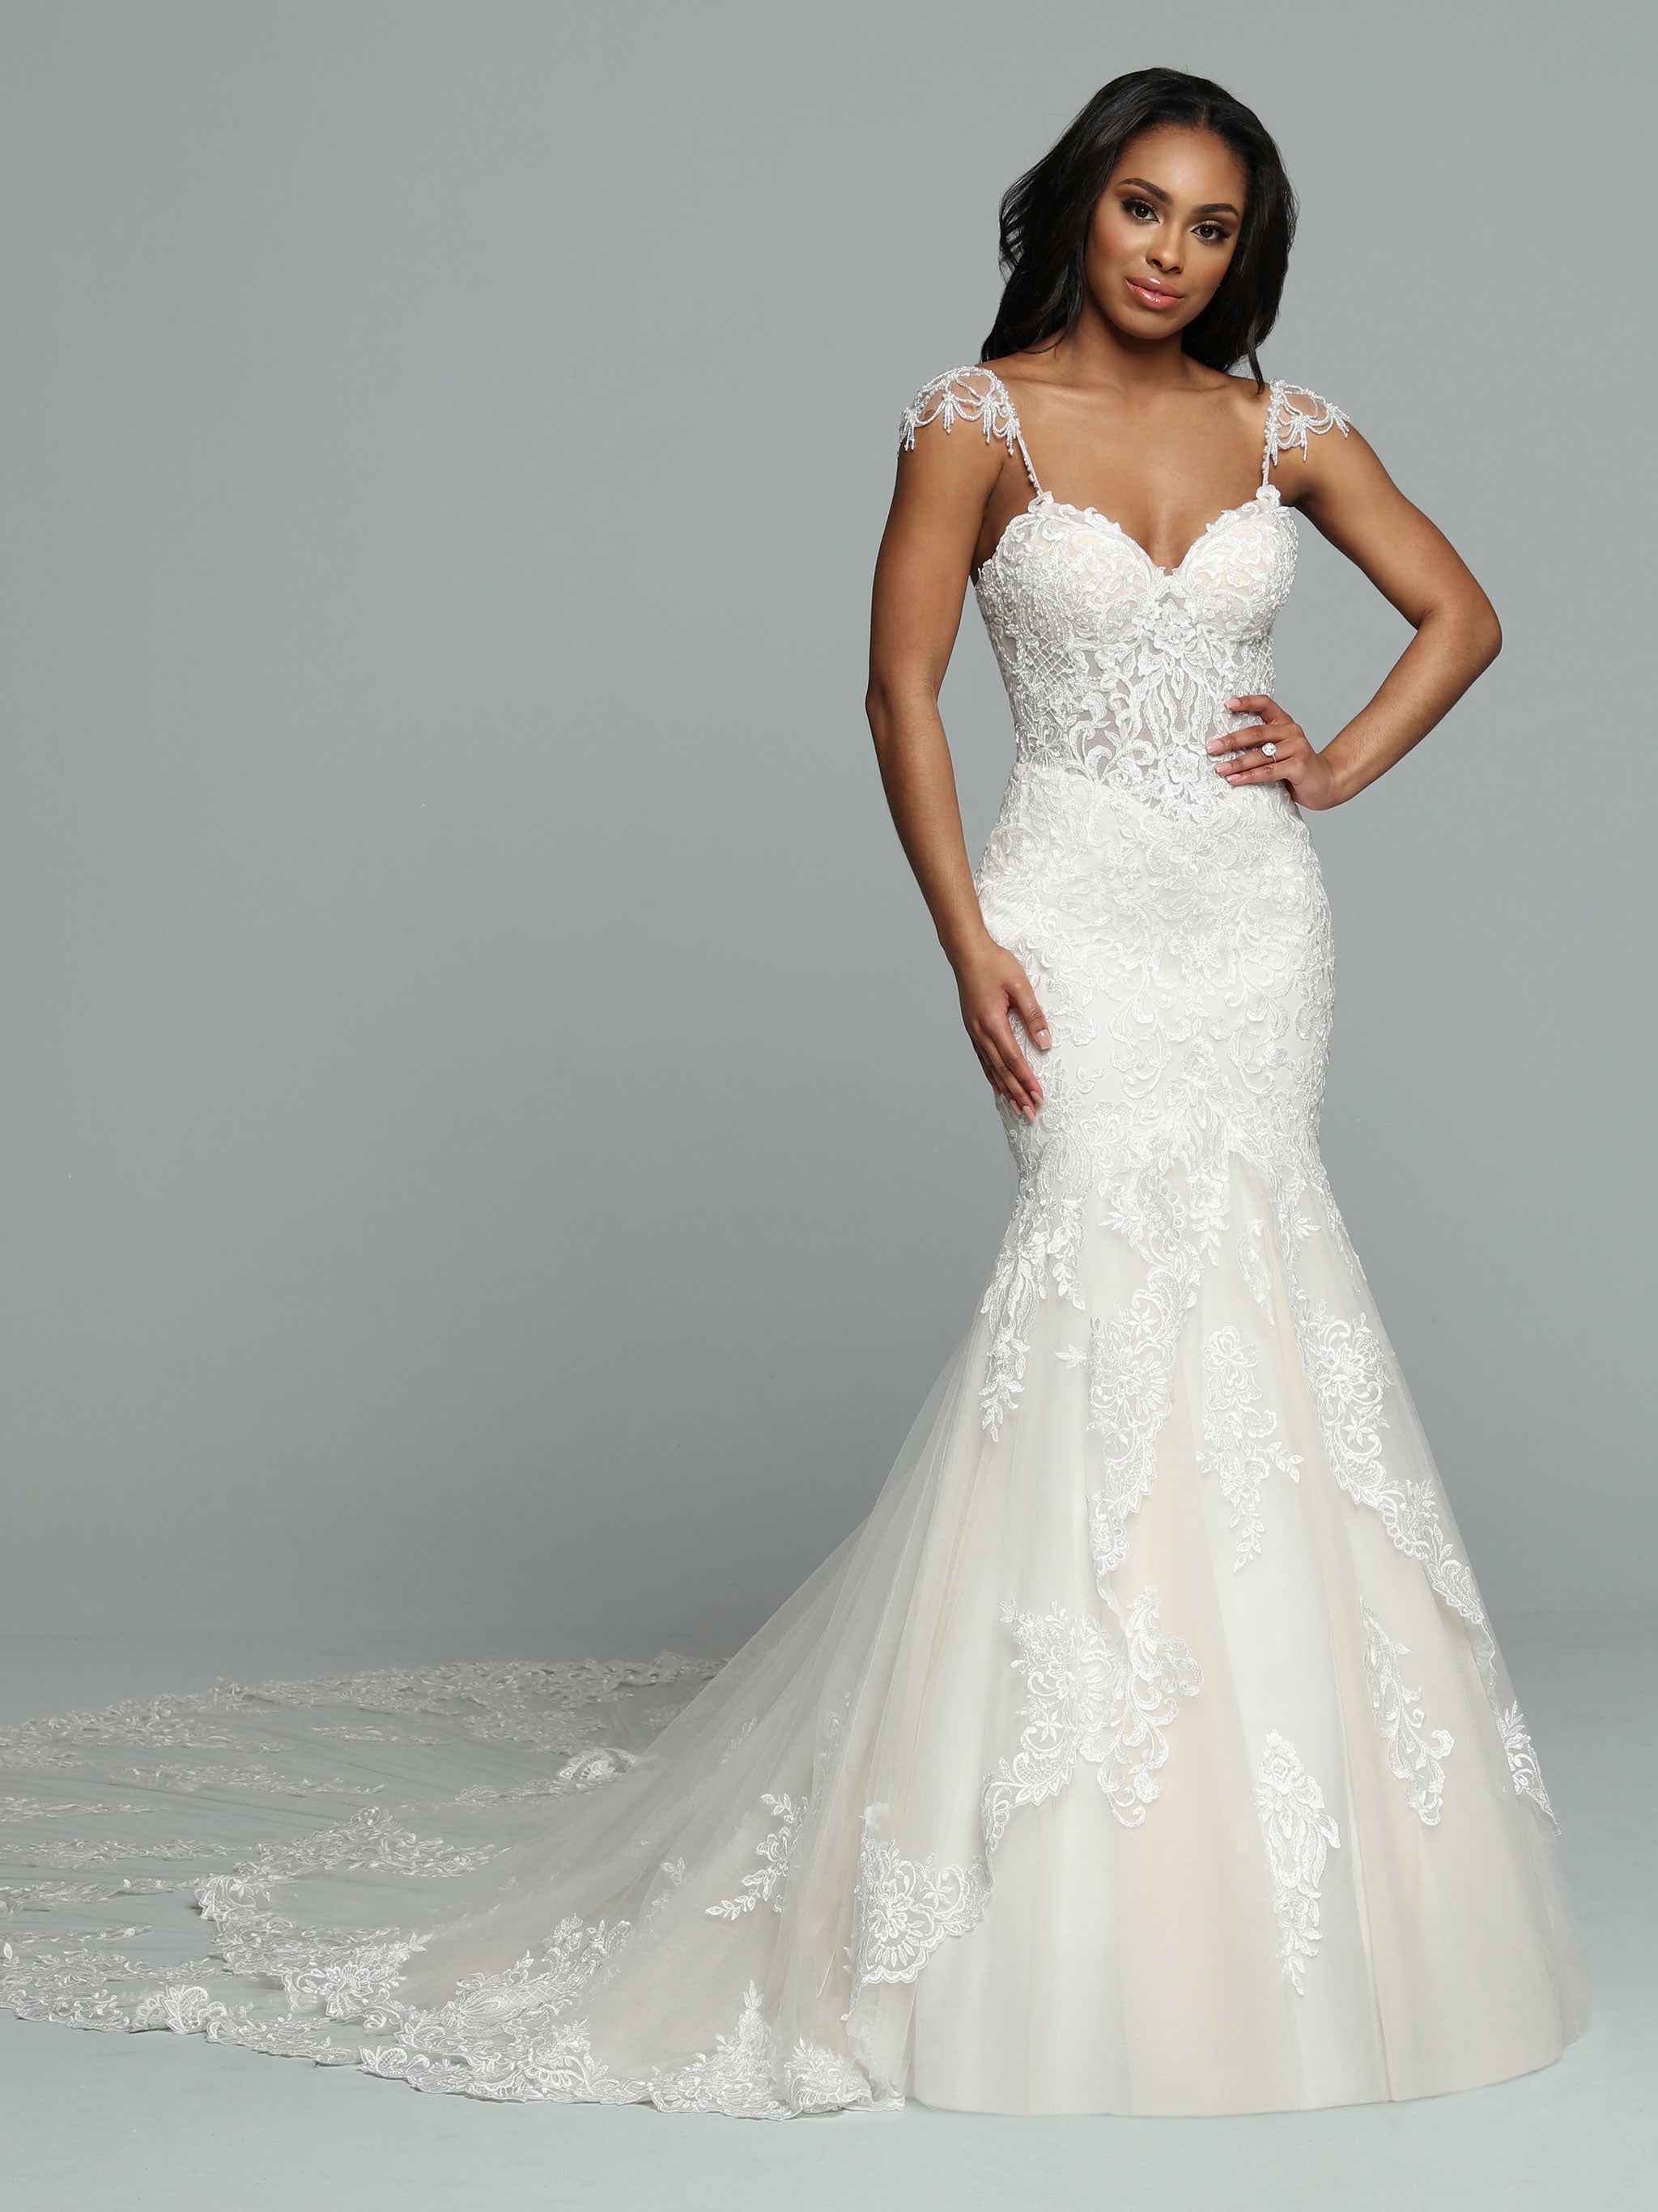 UK White/Ivory Mermaid Lace Beaded Sweetheart Strapless Wedding Dress Size  6-18